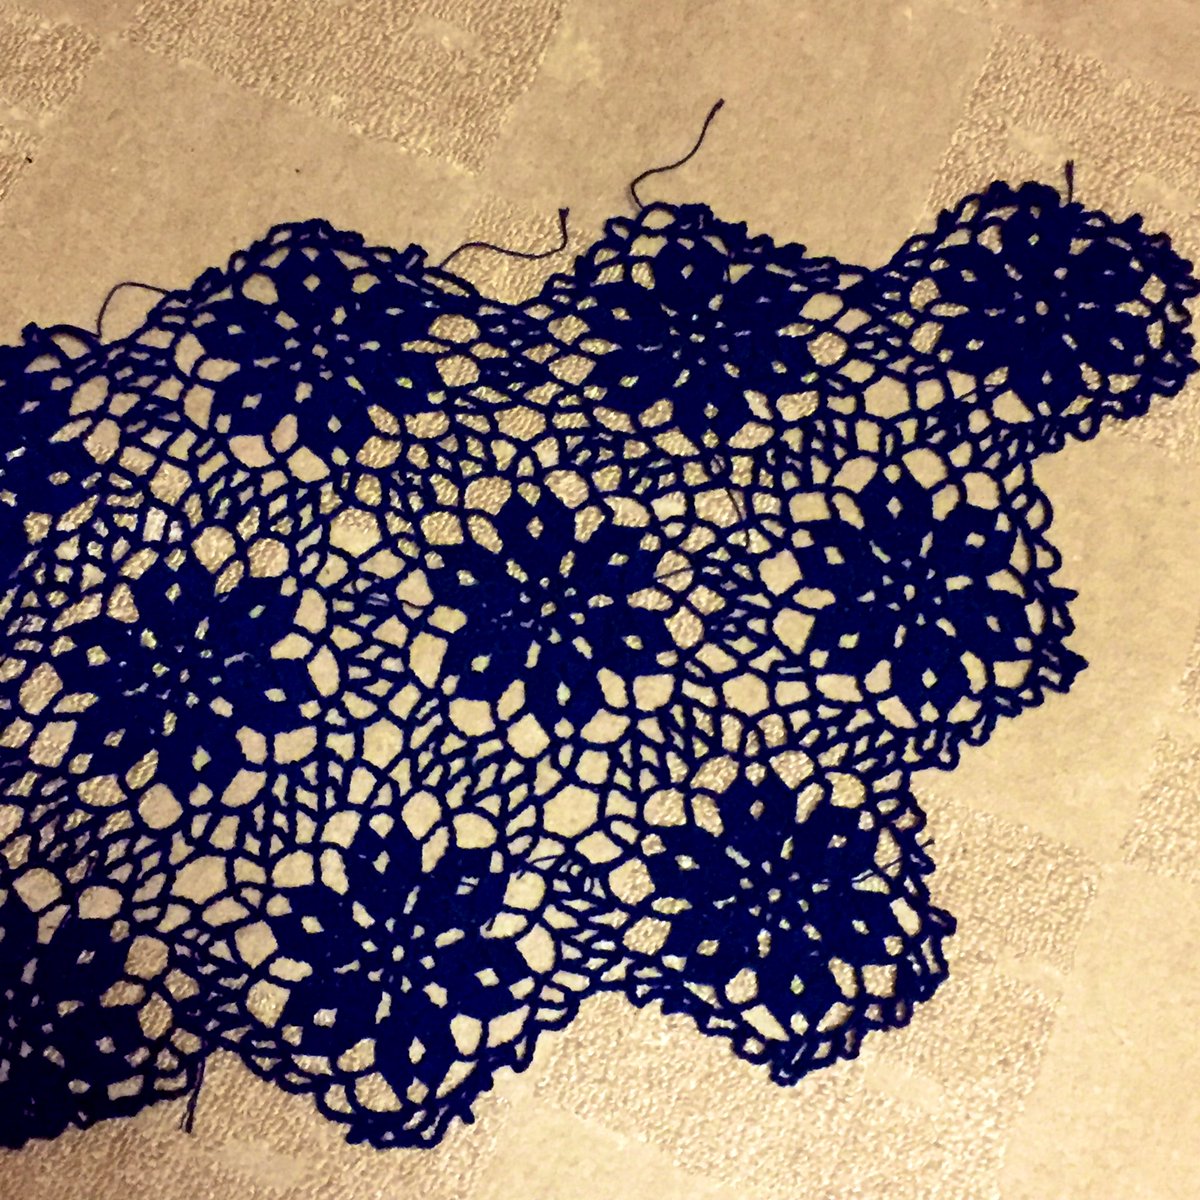 ゆうこ Twitterren ダイソーさんのコットン糸で 雄鶏社の 美しいレース モチーフつなぎ の編み図を参考に 台形ショールを編んでいます かぎ針編み 編み物 100均糸kcal 手編みショール モチーフつなぎ